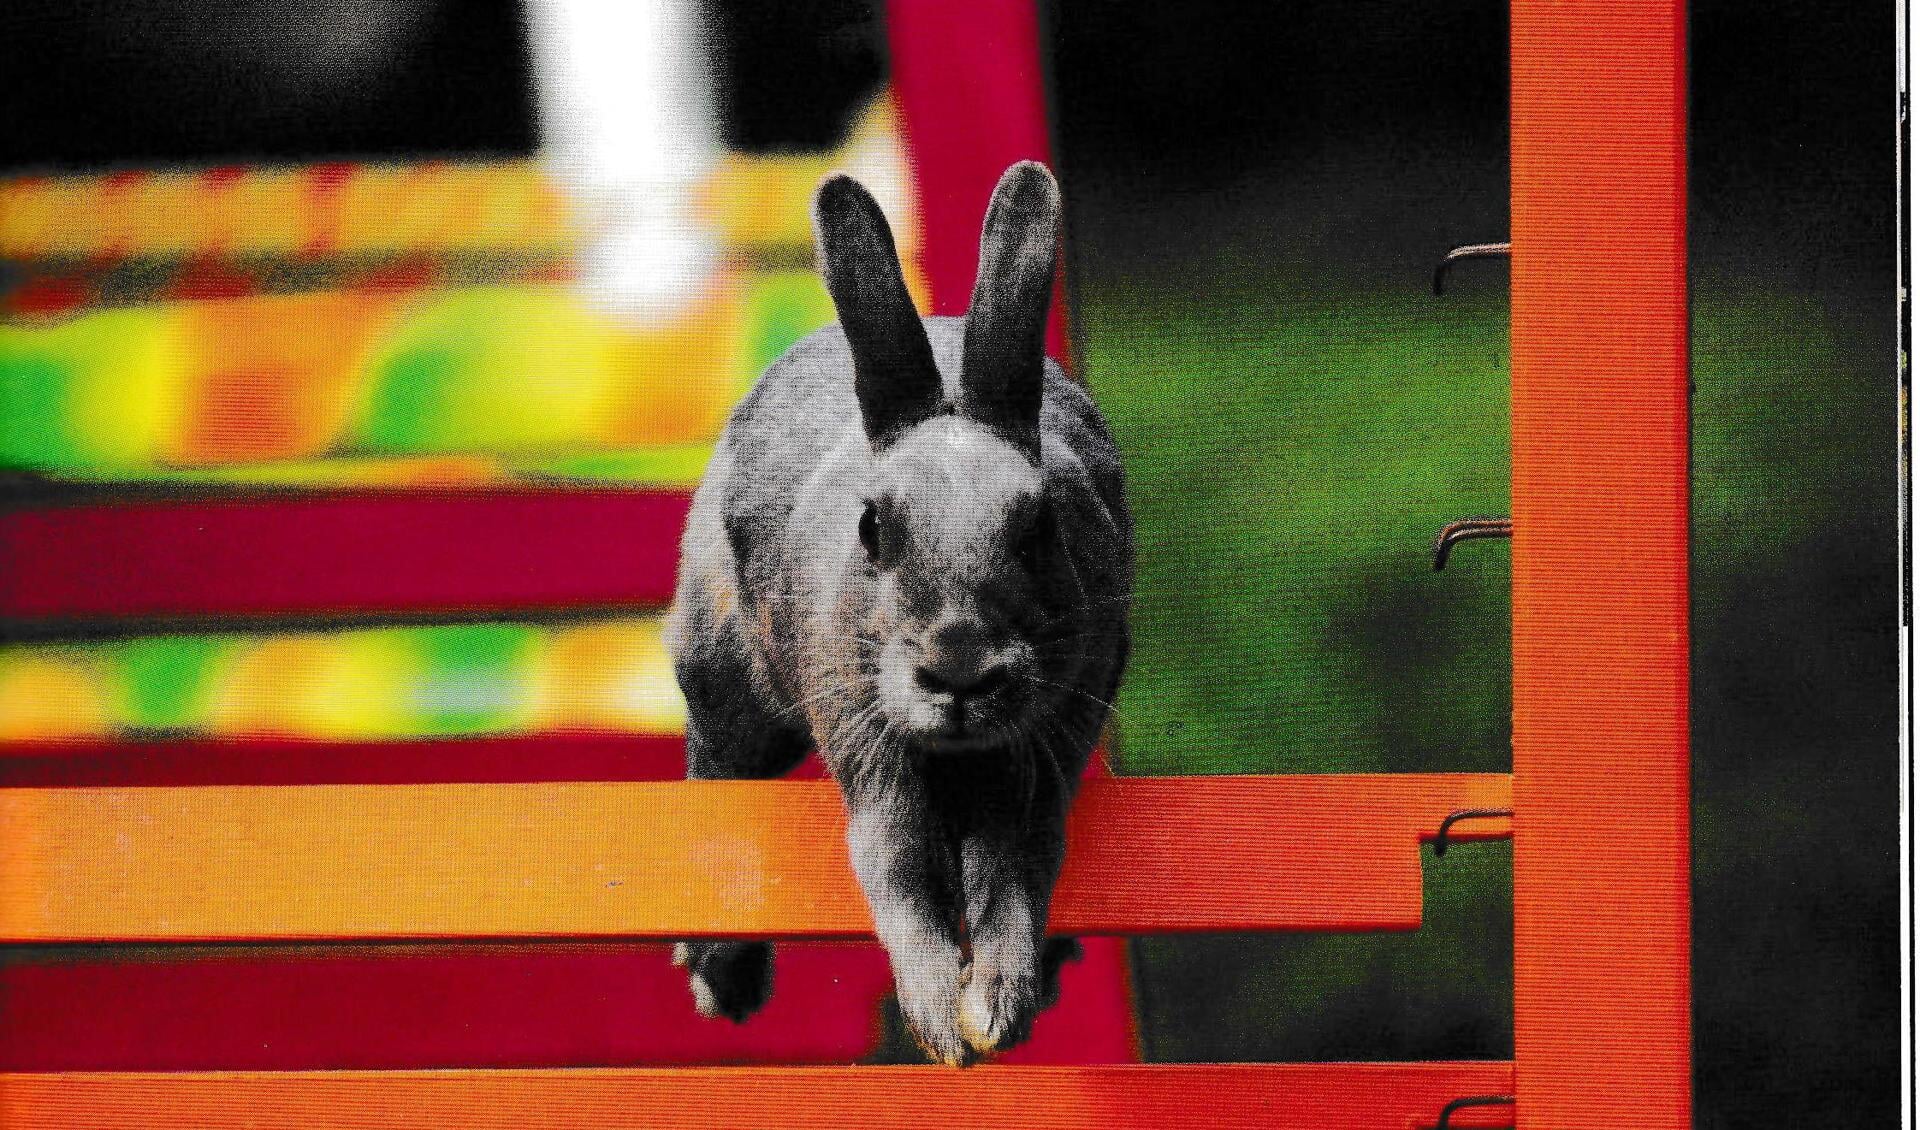 Konijn Hop: sport en spel konijnen! - Al het nieuws uit Over-Nederbetuwe